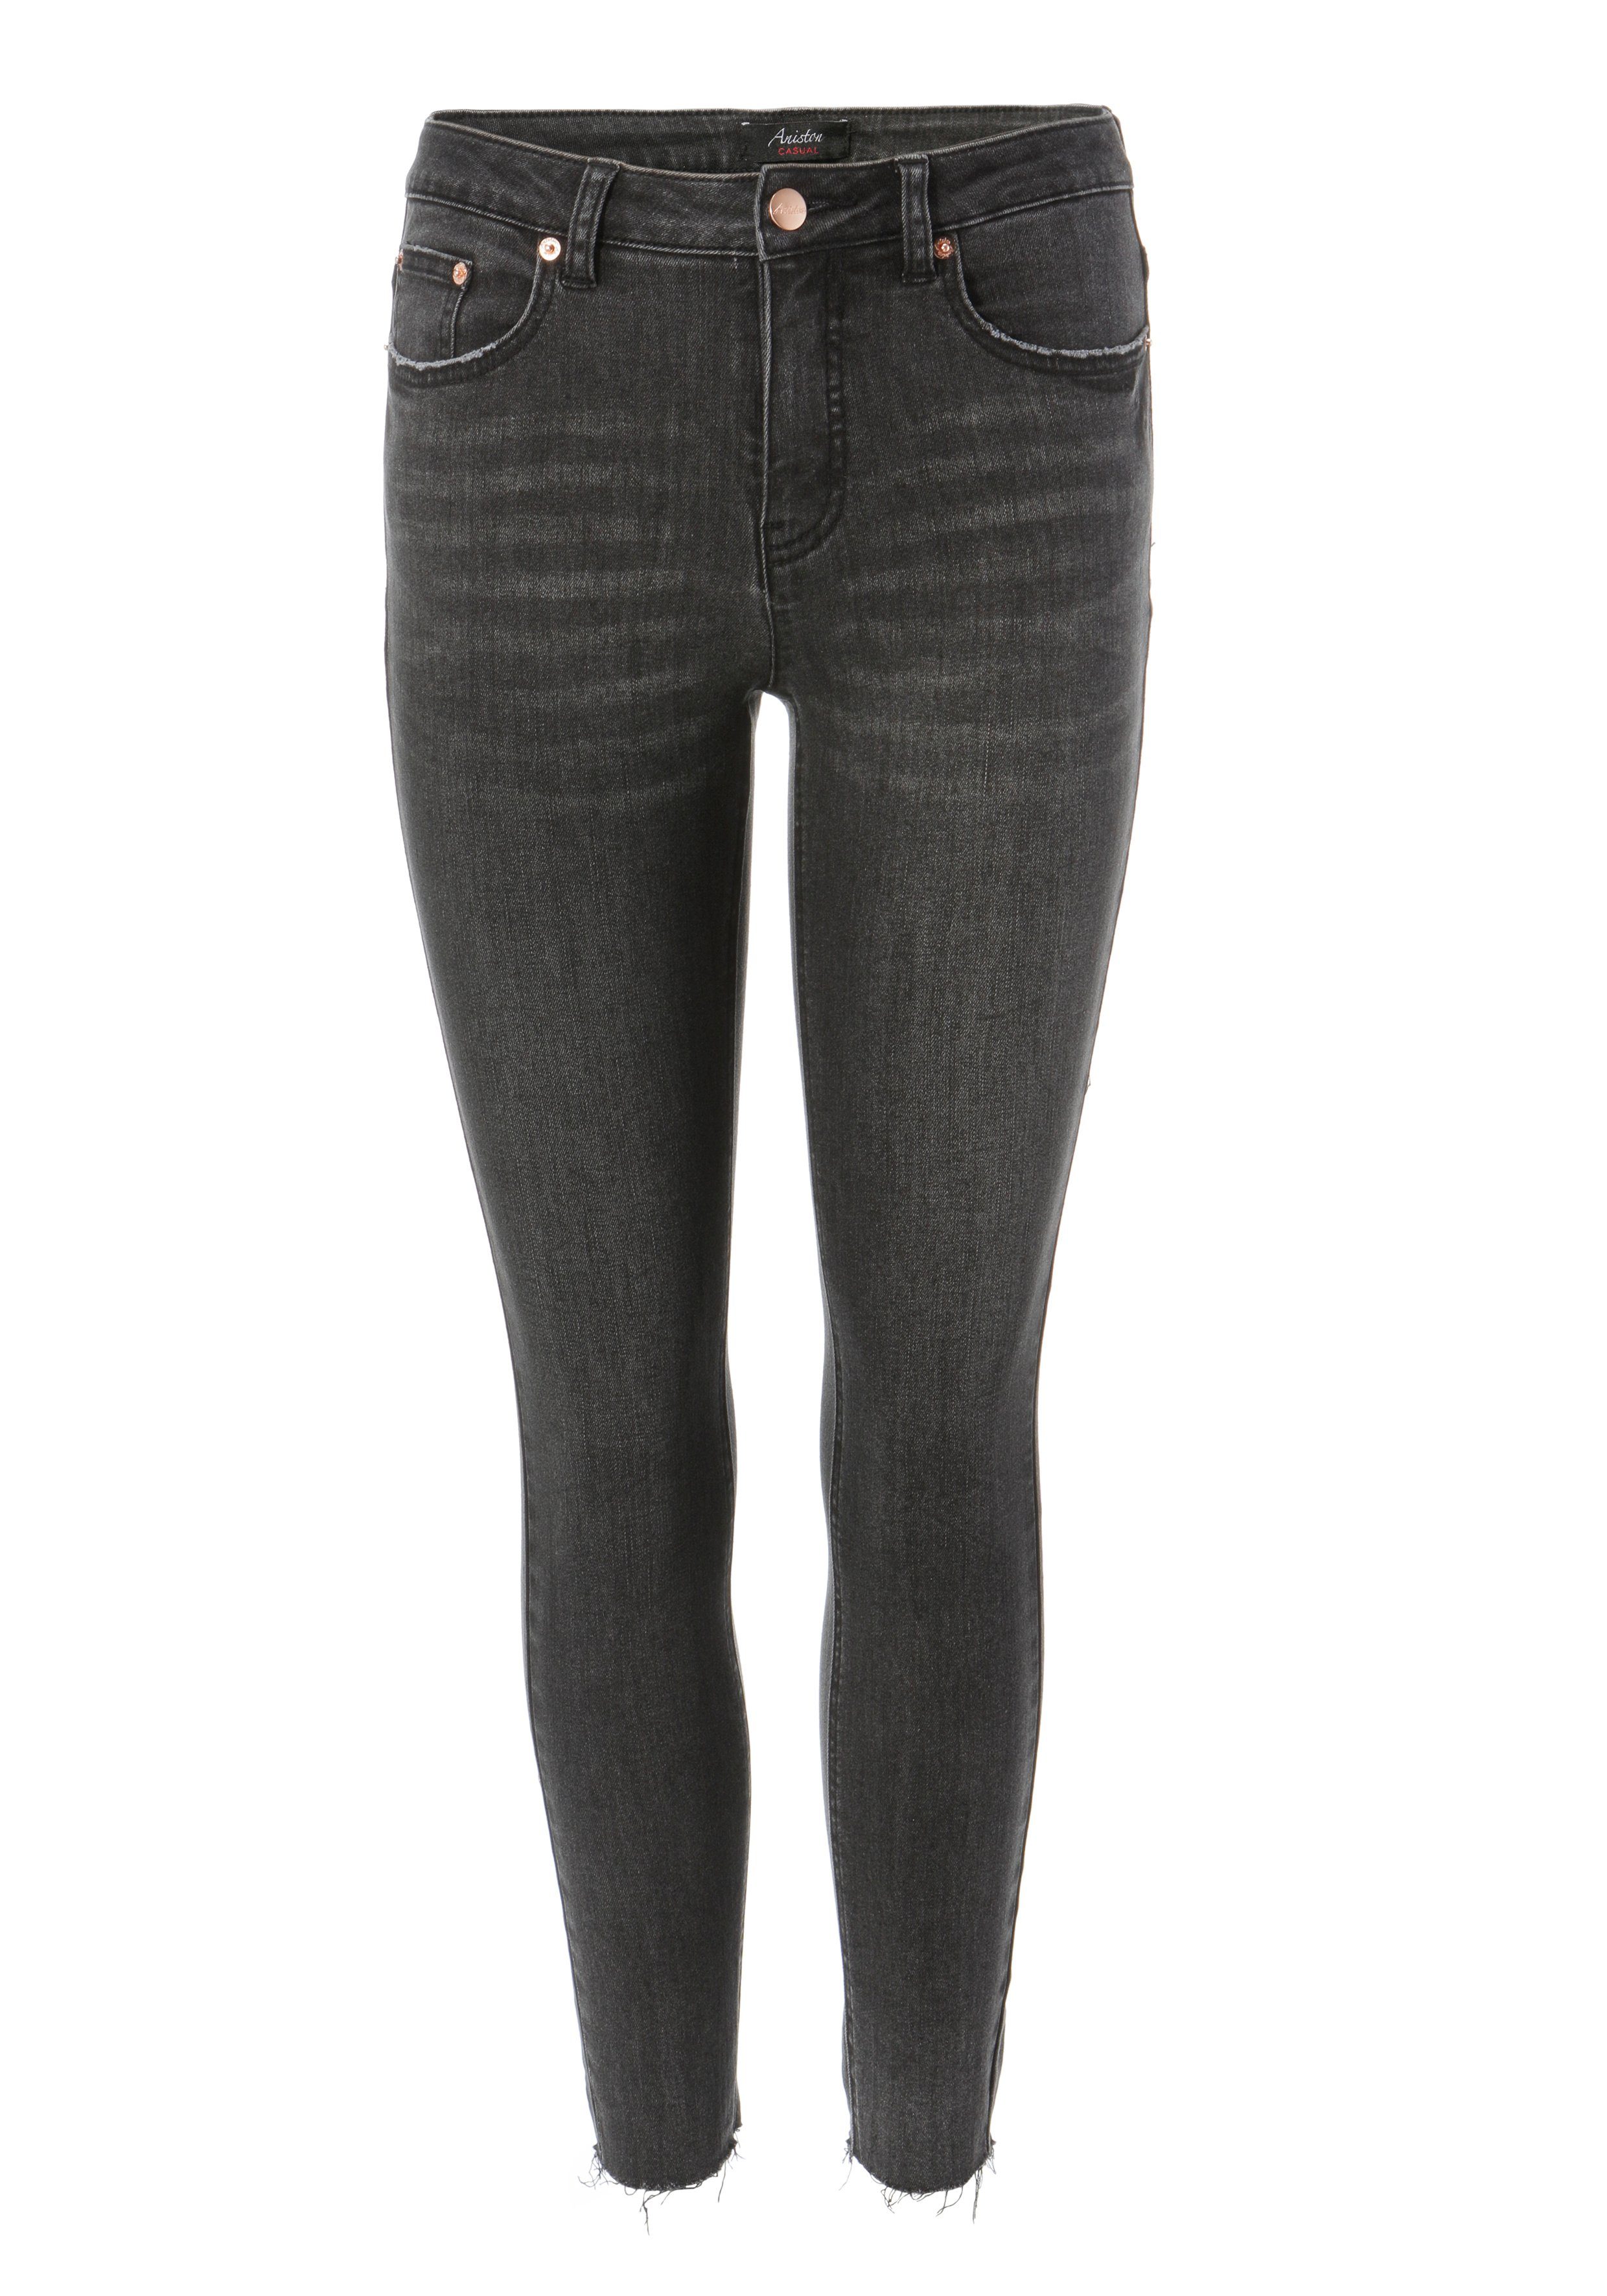 Aniston CASUAL Skinny-fit-Jeans regular waist Beinabschluss black - mit ausgefransten